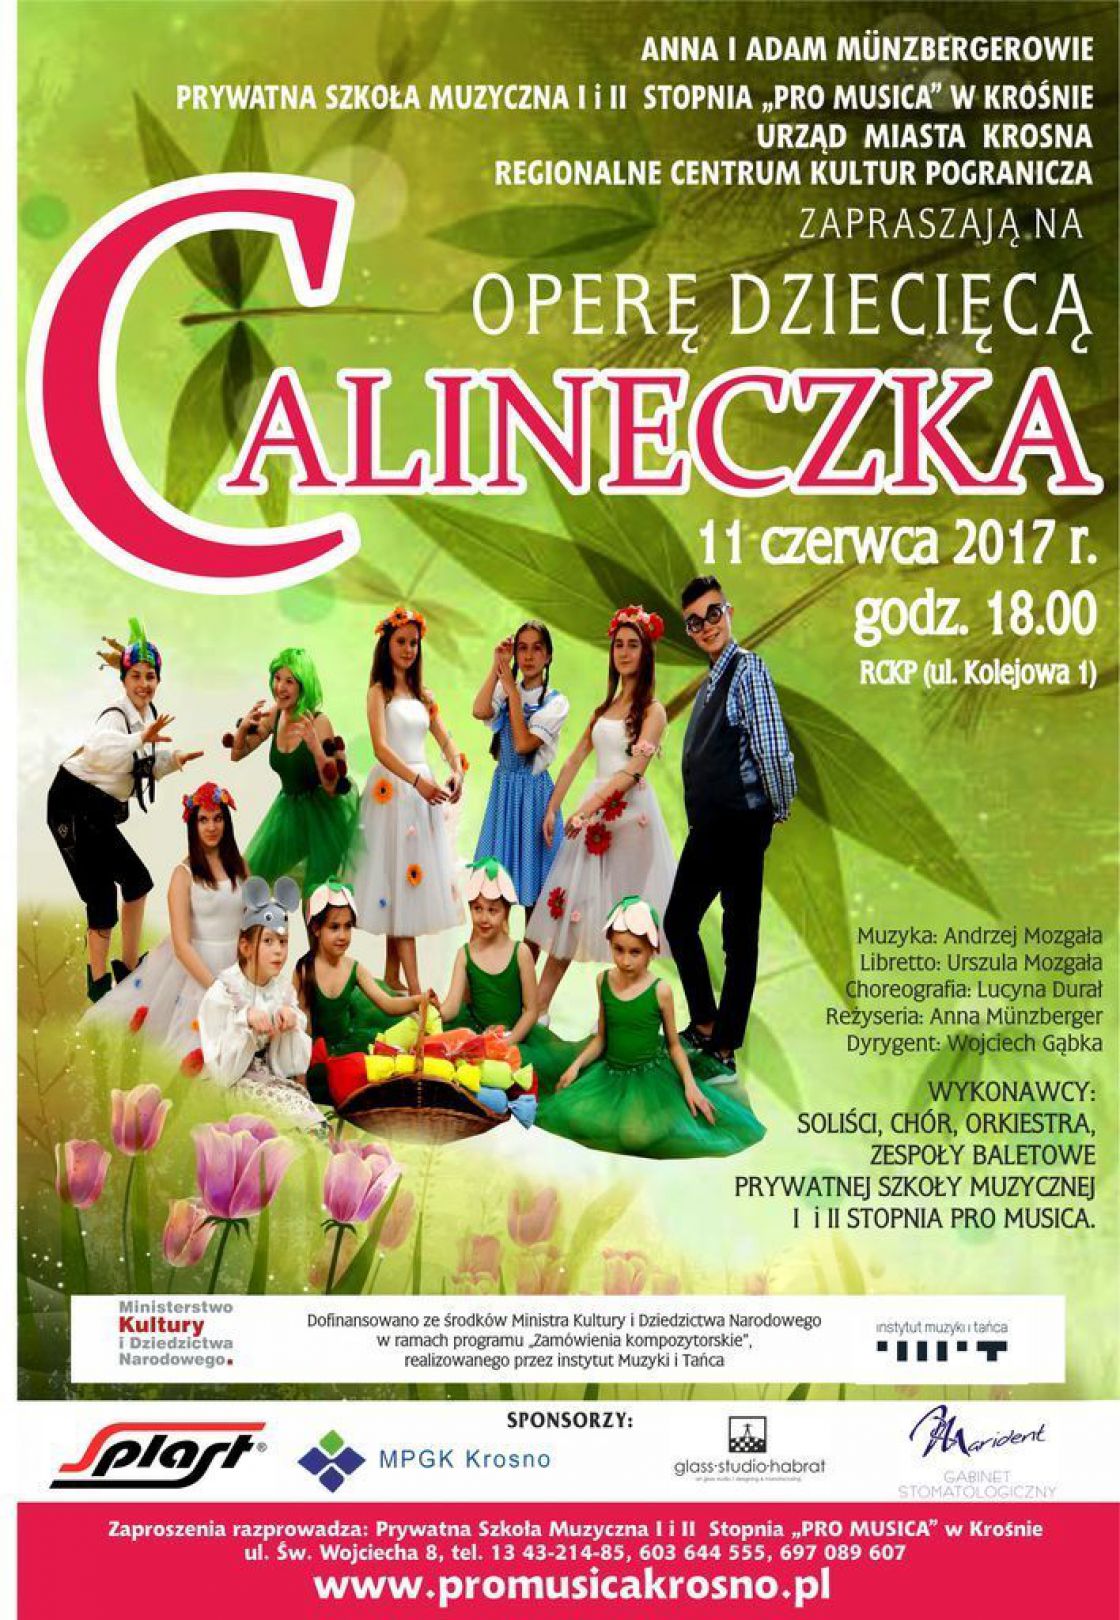 Opera dziecięca &quot;Calineczka&quot; w Krośnie